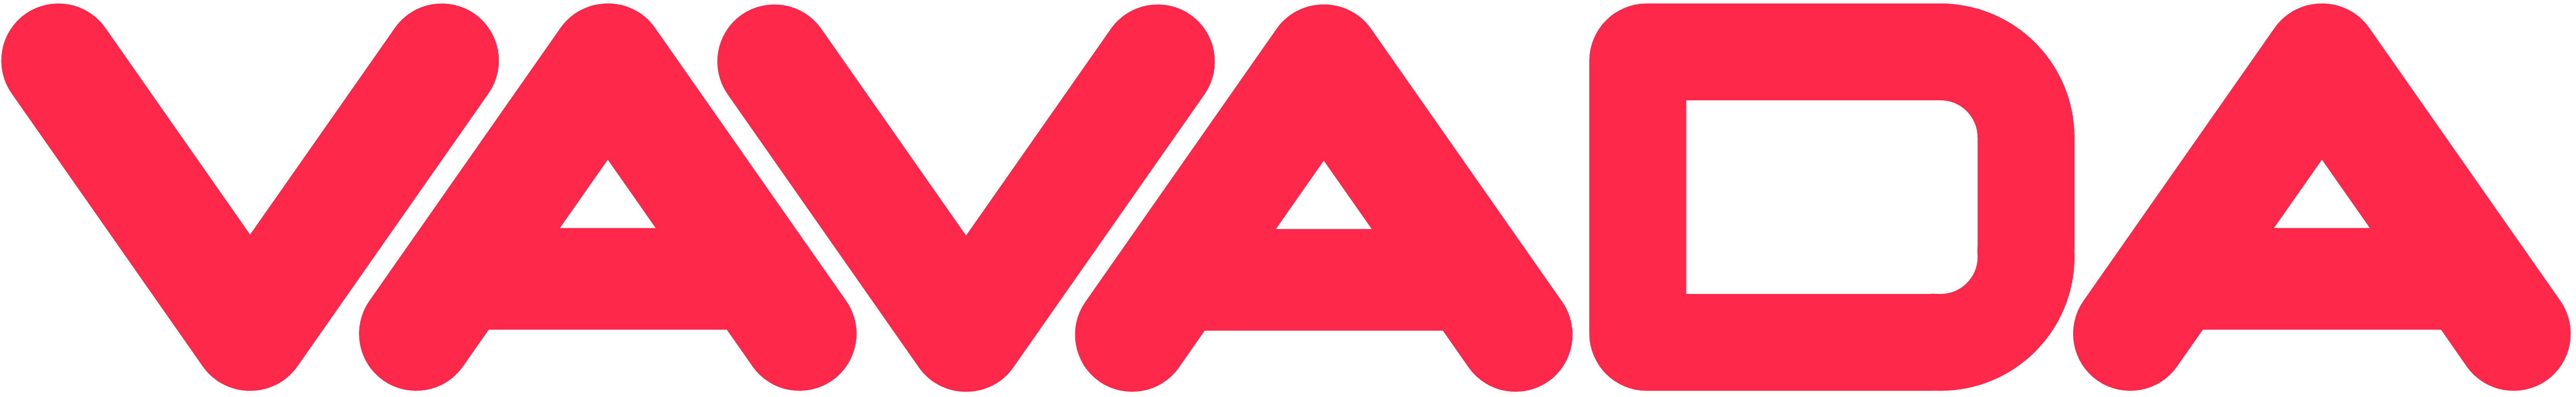 Офіційний логотип казино Вавада